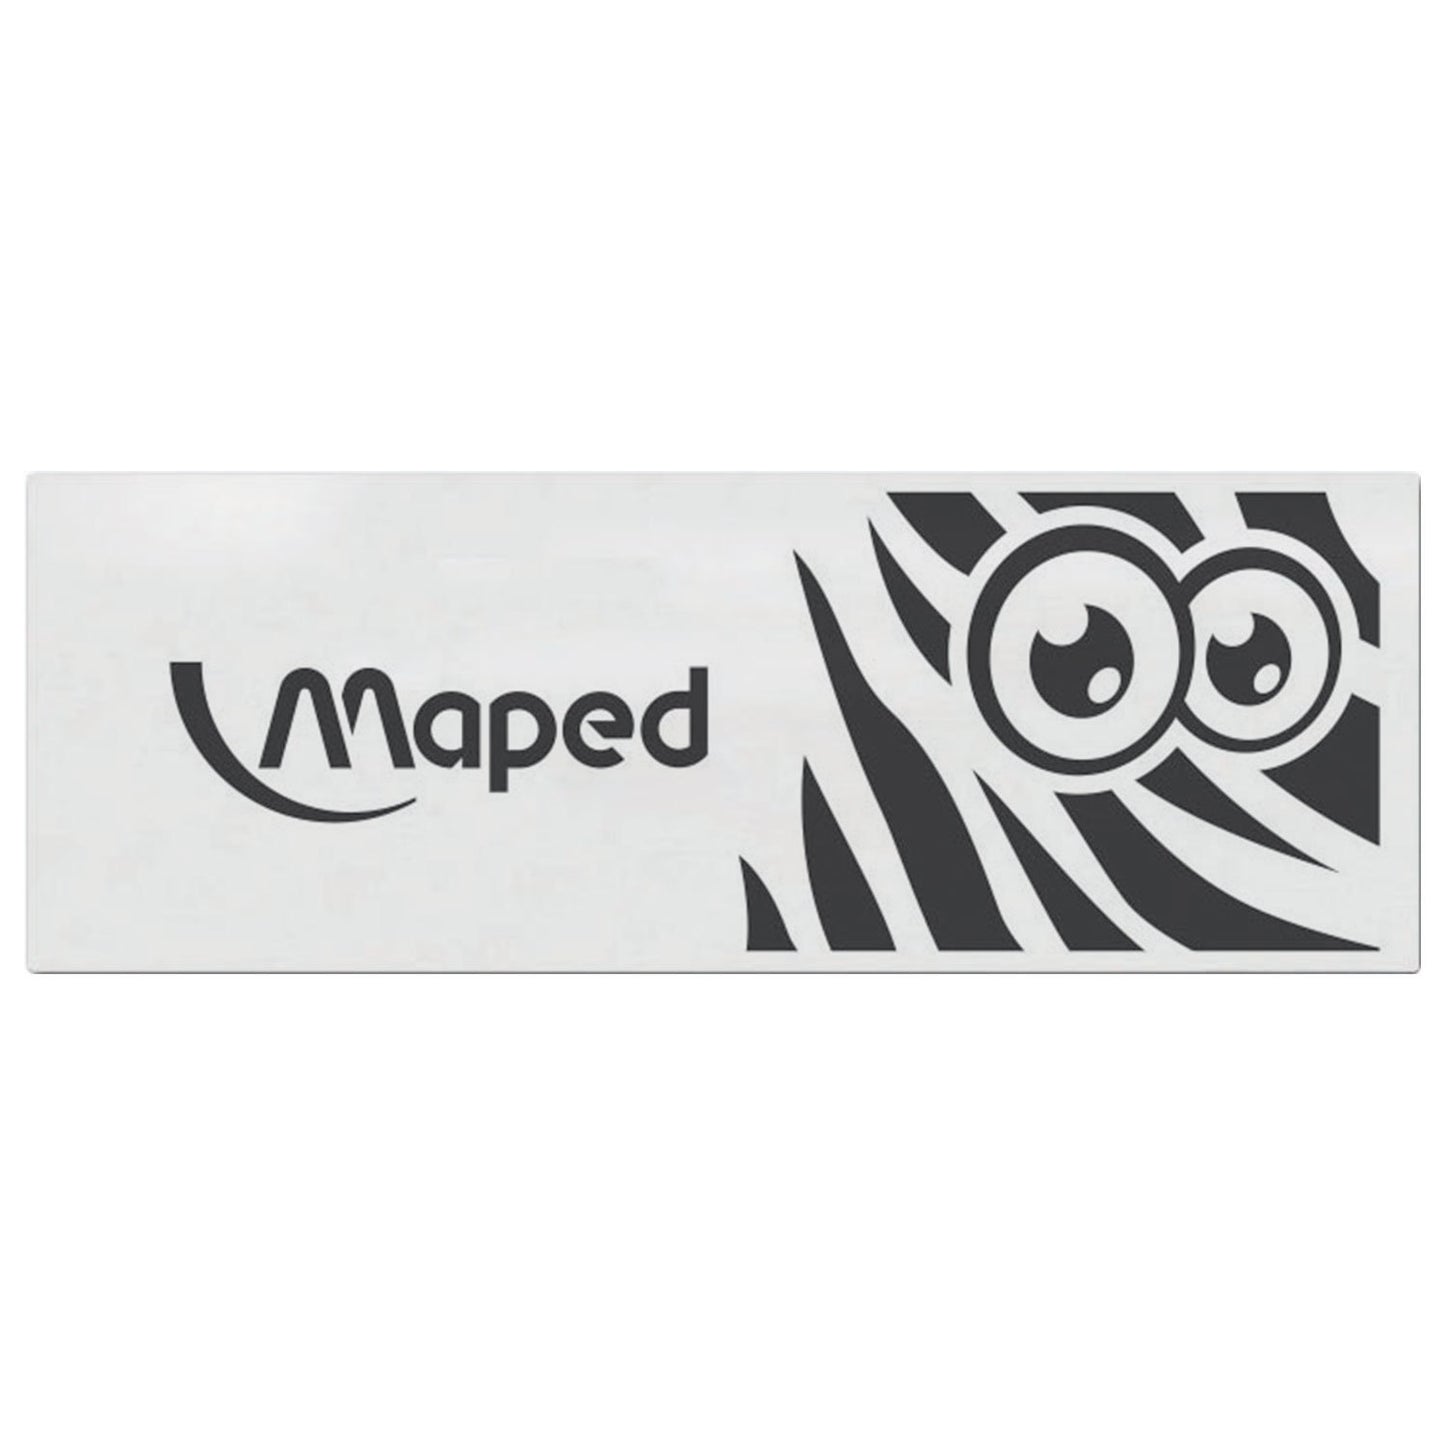 Maped Eraser